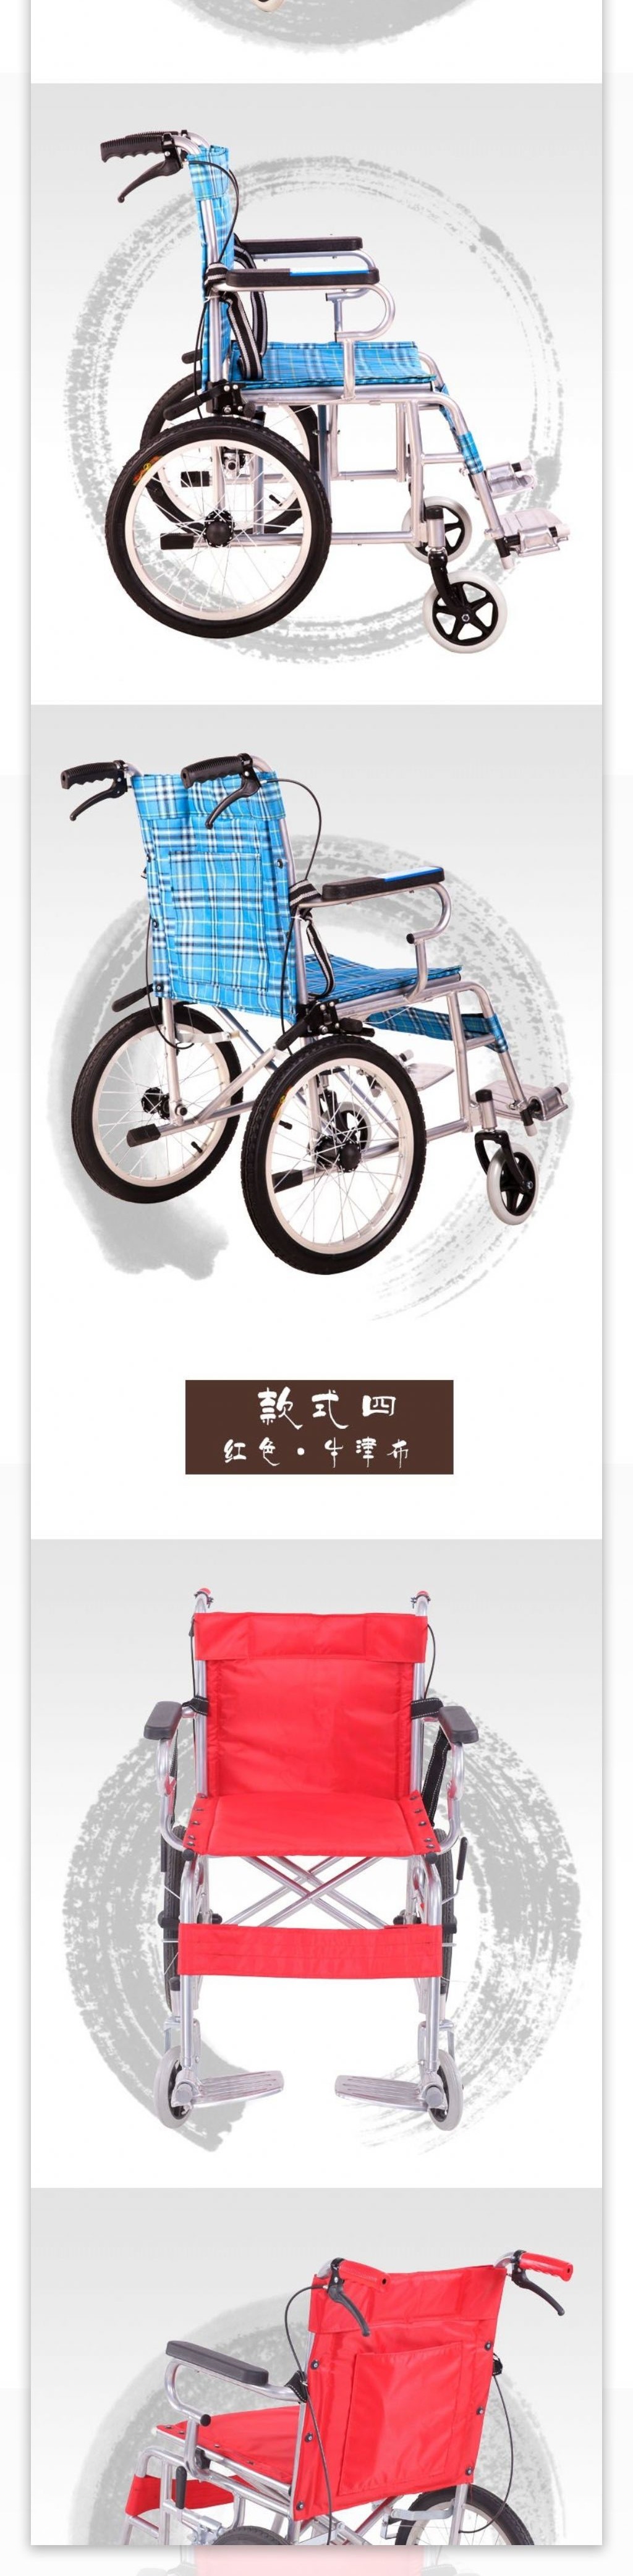 中国风淘宝海报原创设计